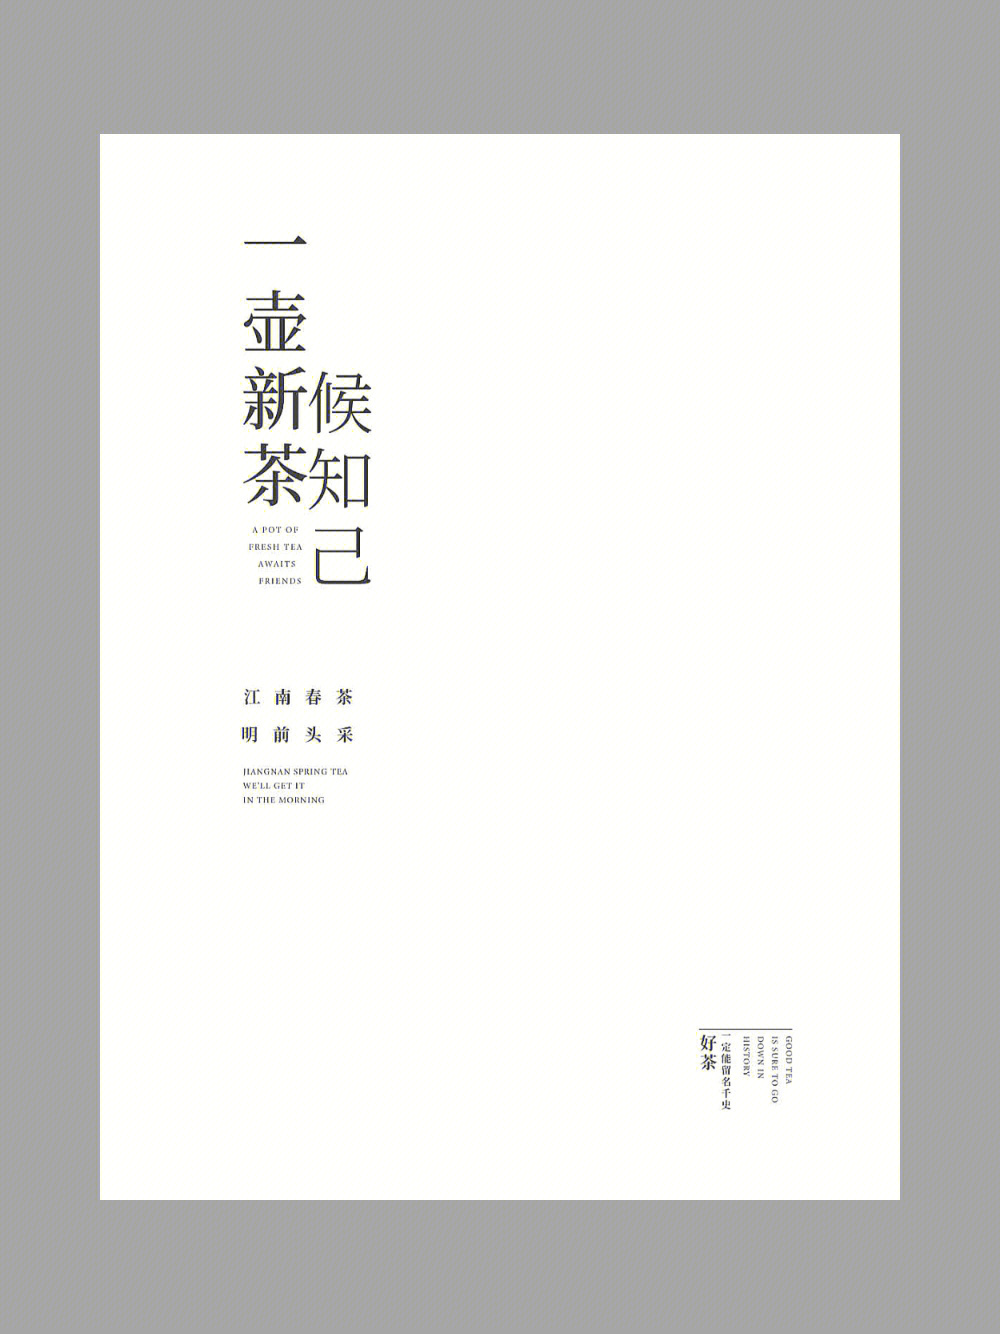 中文纯文字排版设计图片